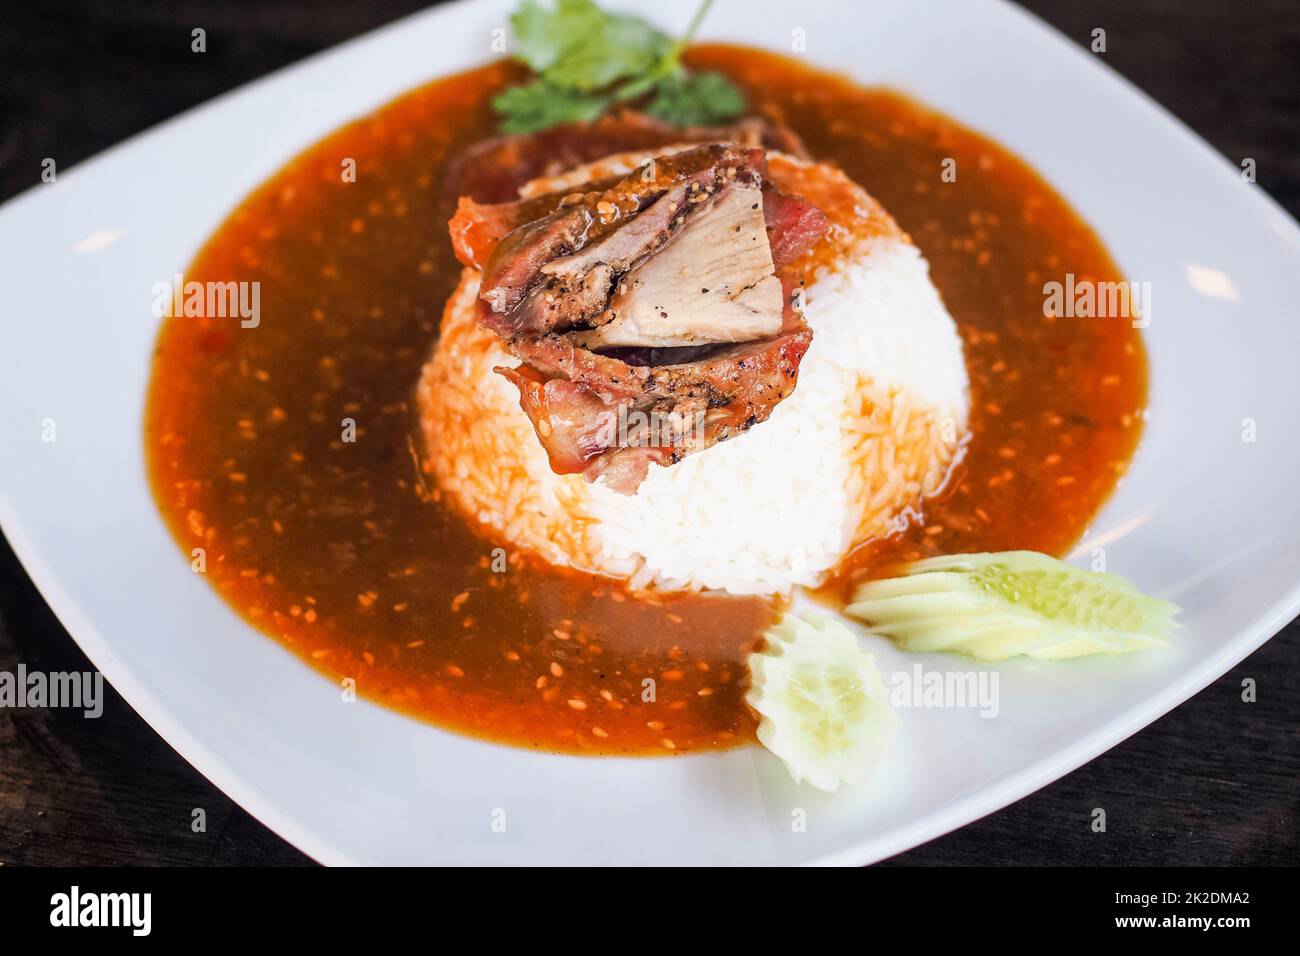 Carne di maiale alla griglia rossa su riso, cibo servito con curry dolce e verdure (cetriolo, coriandolo) su piastra bianca in ceramica. Foto Stock